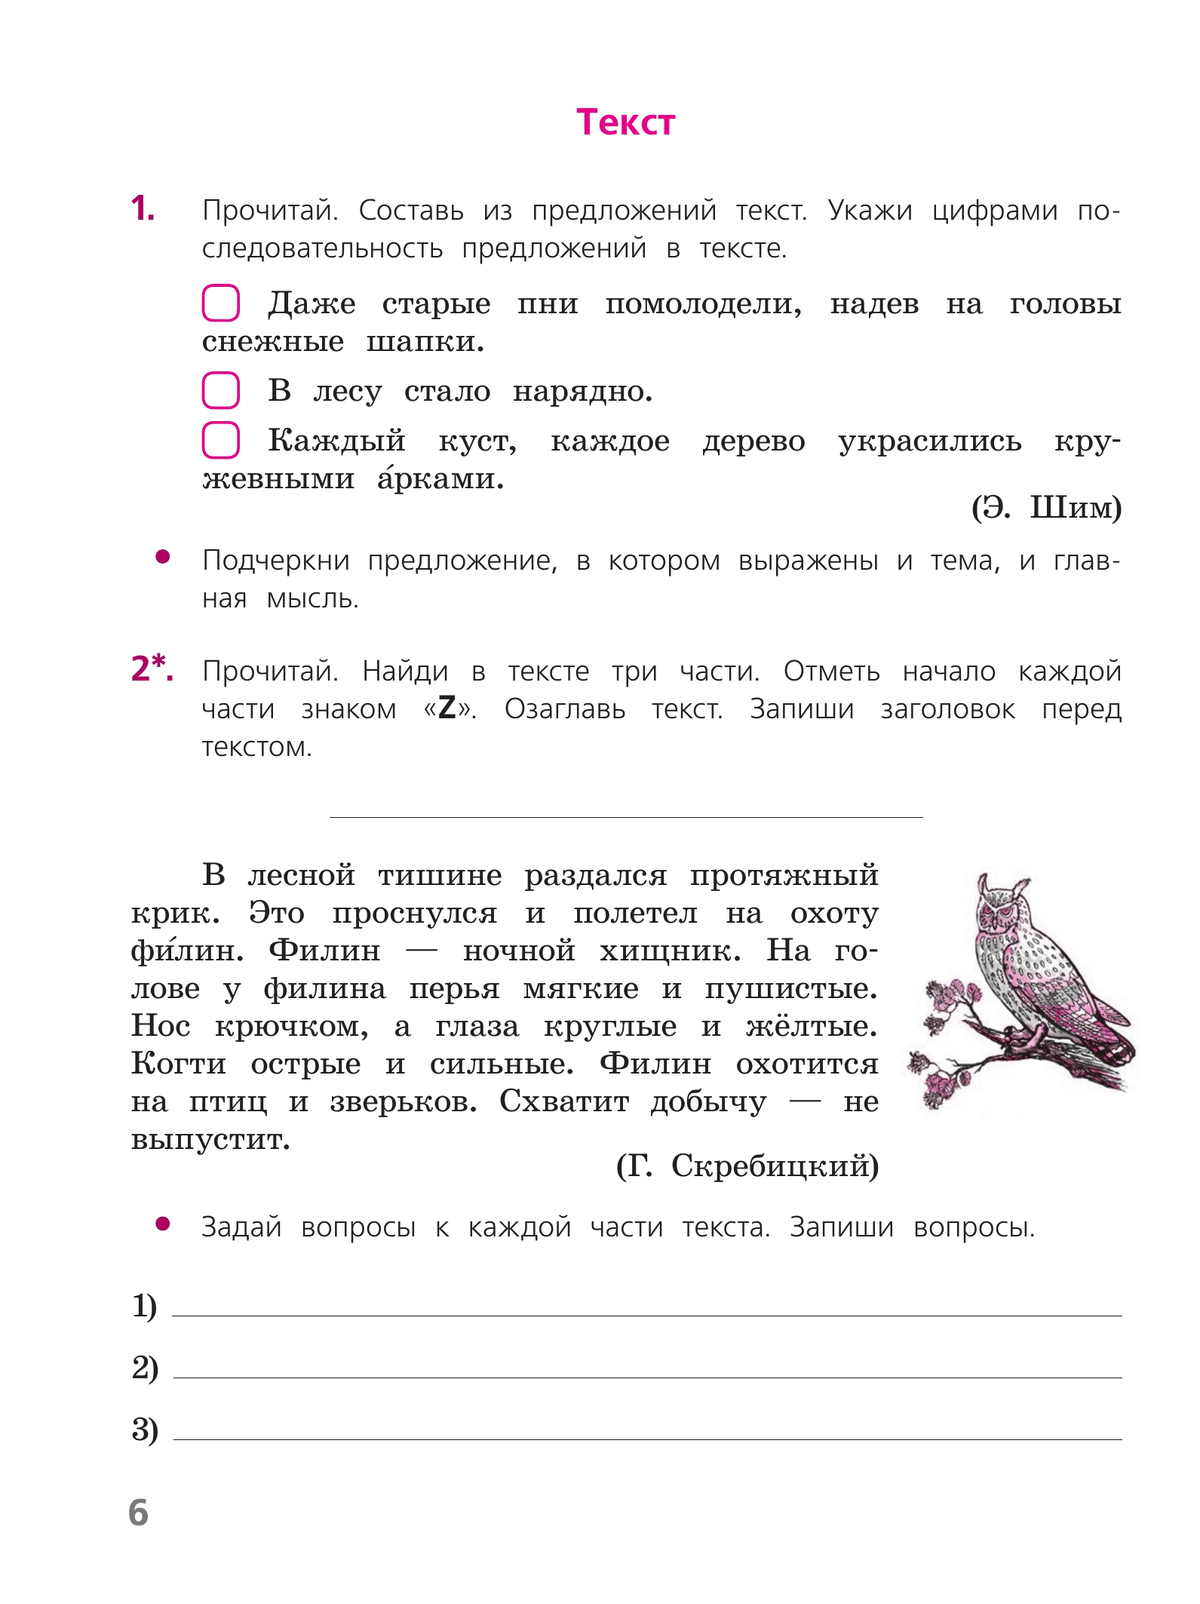 Русский язык. Тетрадь учебных достижений. 4 класс 9